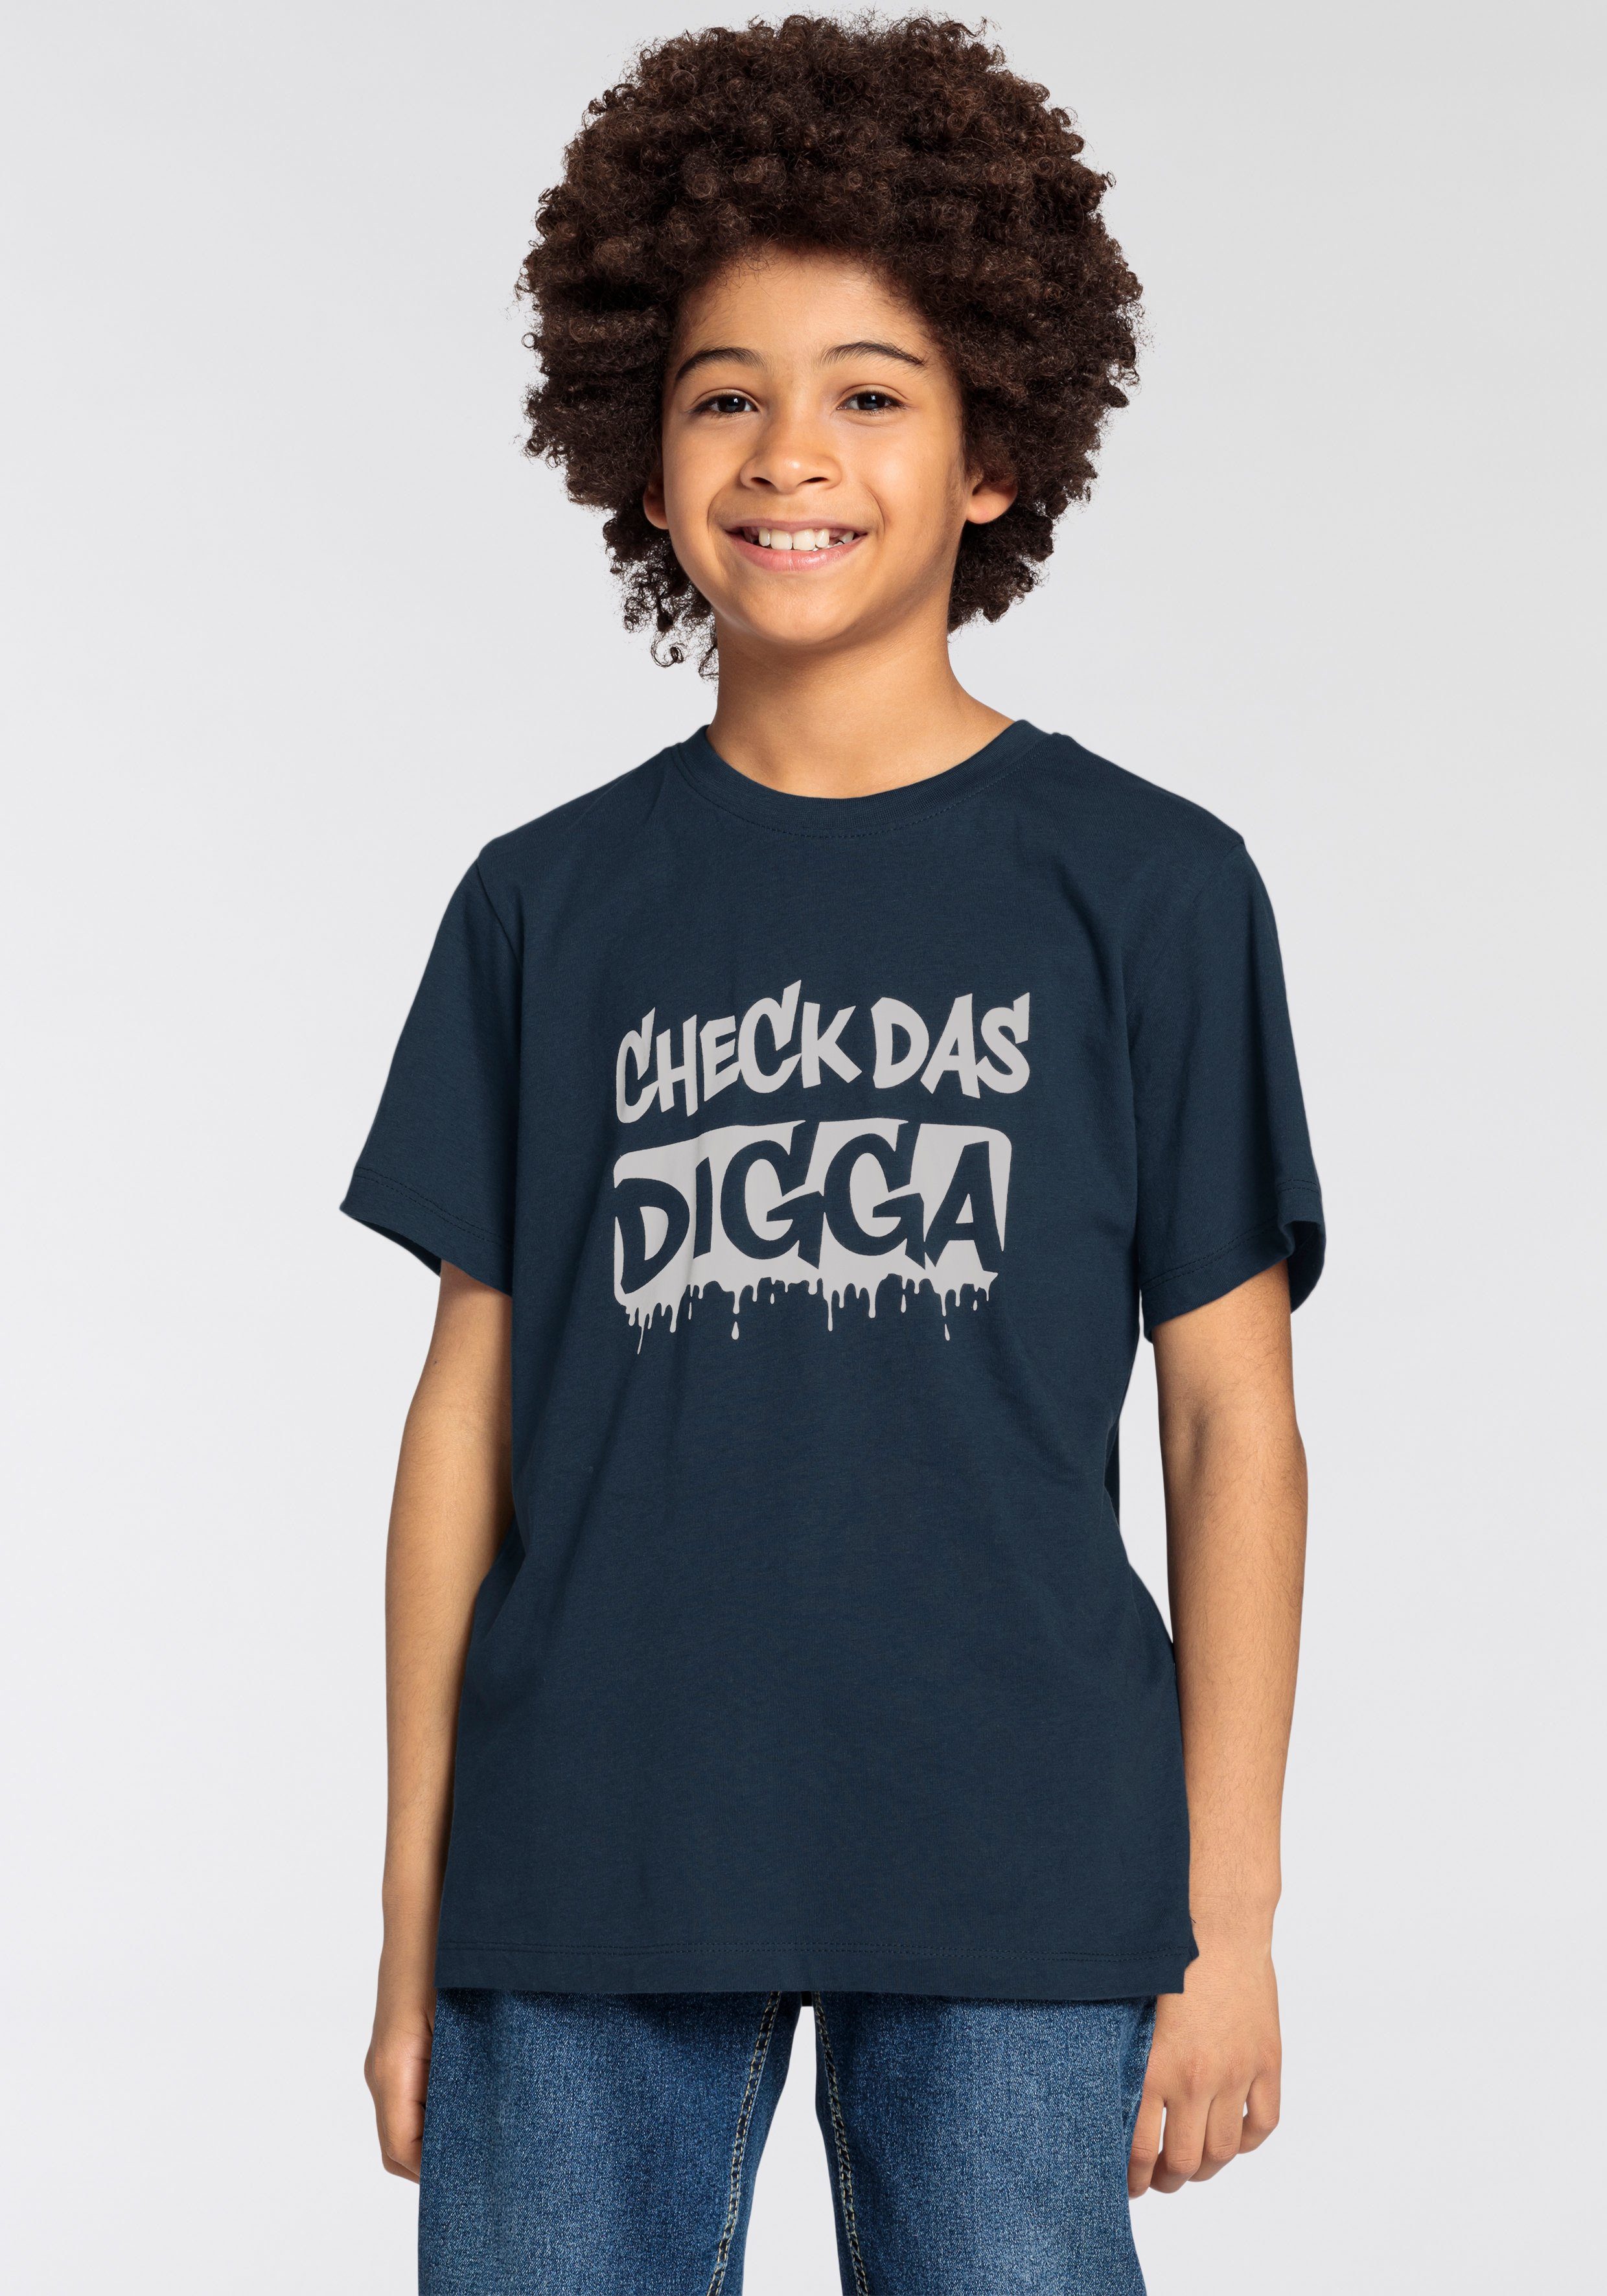 T-Shirt CHECK KIDSWORLD DAS Sprücheshirt für Jungen DIGGA